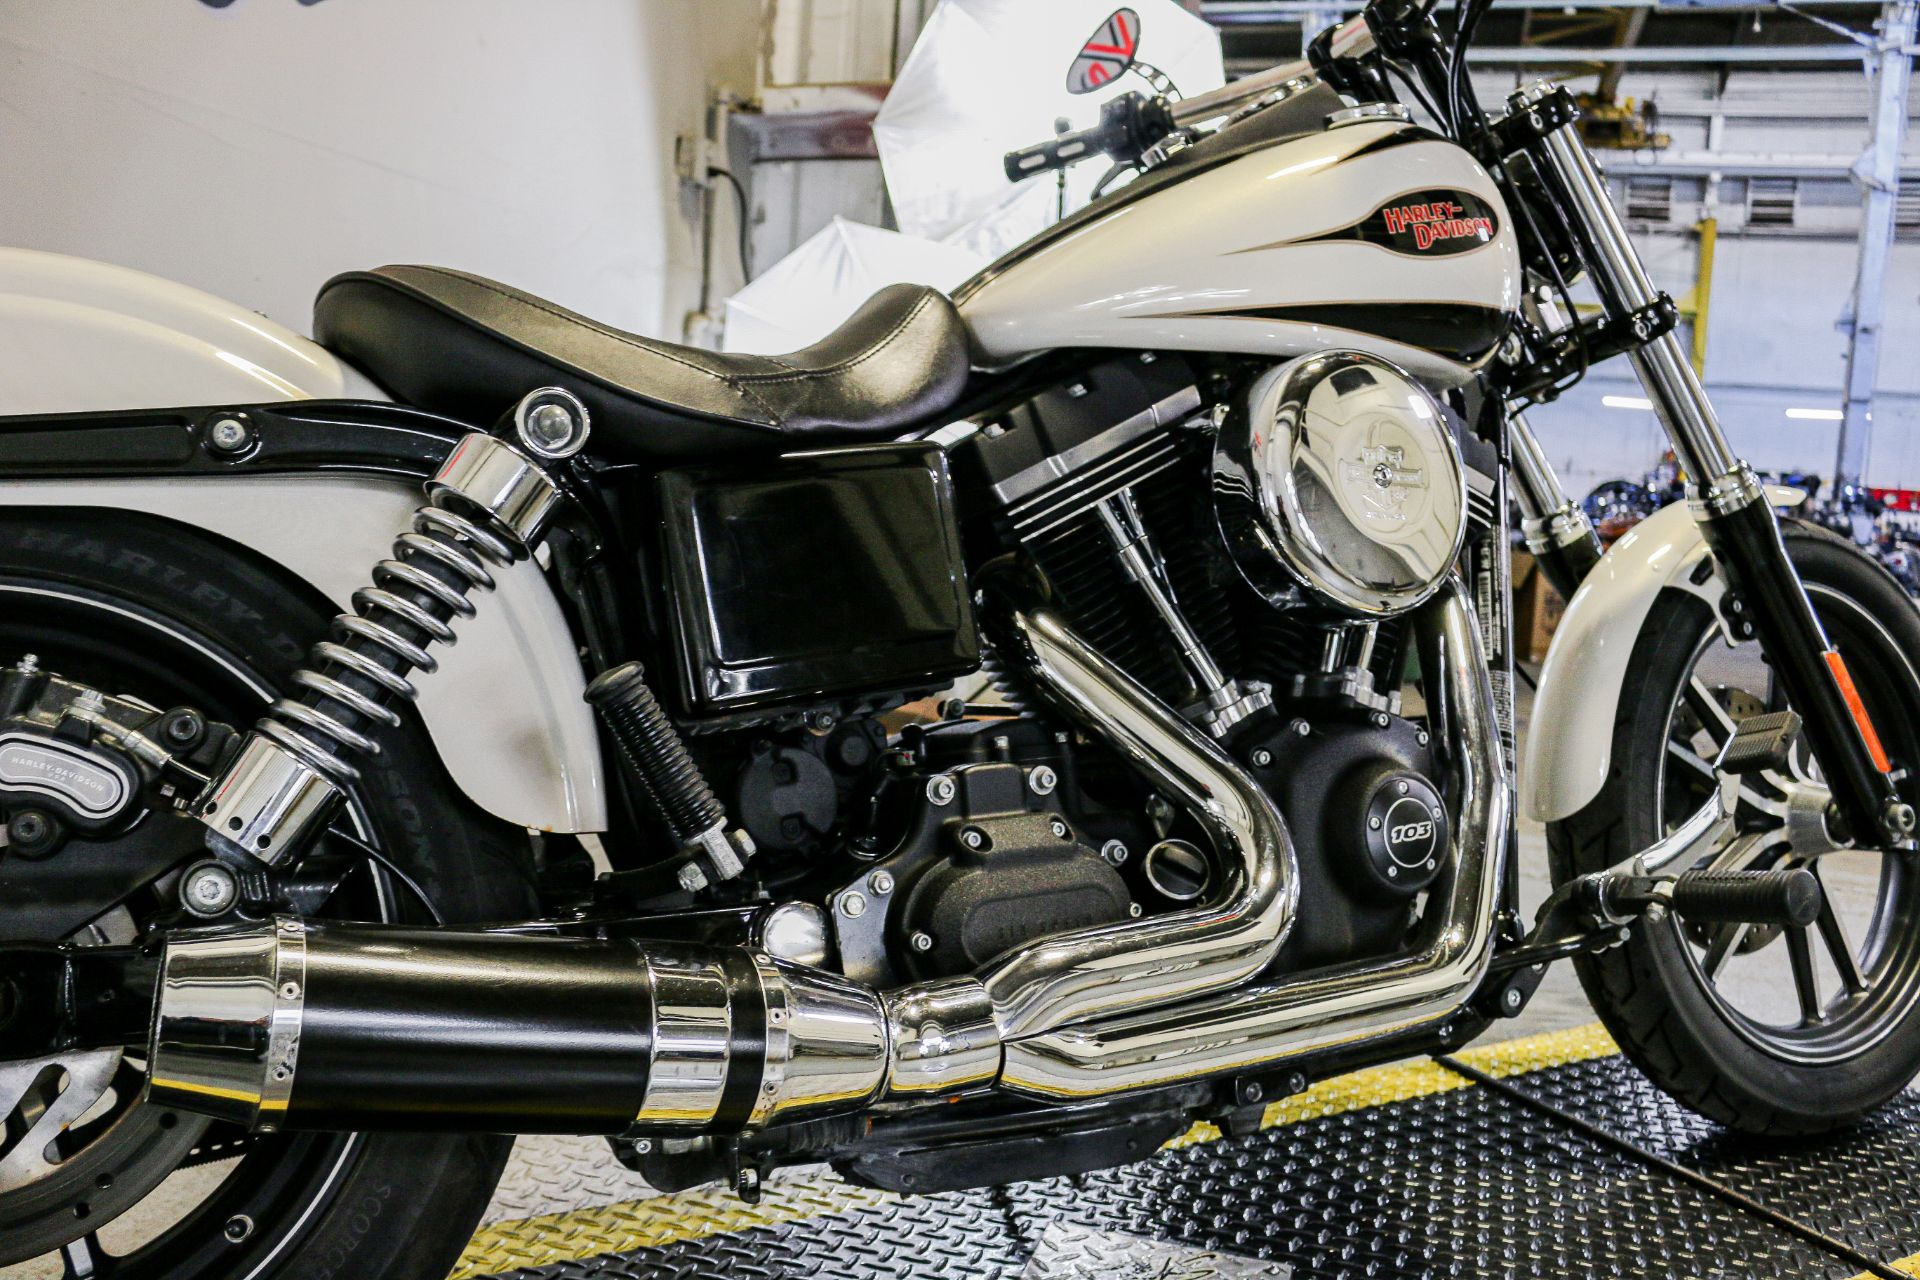 2014 Harley-Davidson Dyna® Street Bob® in Sacramento, California - Photo 8